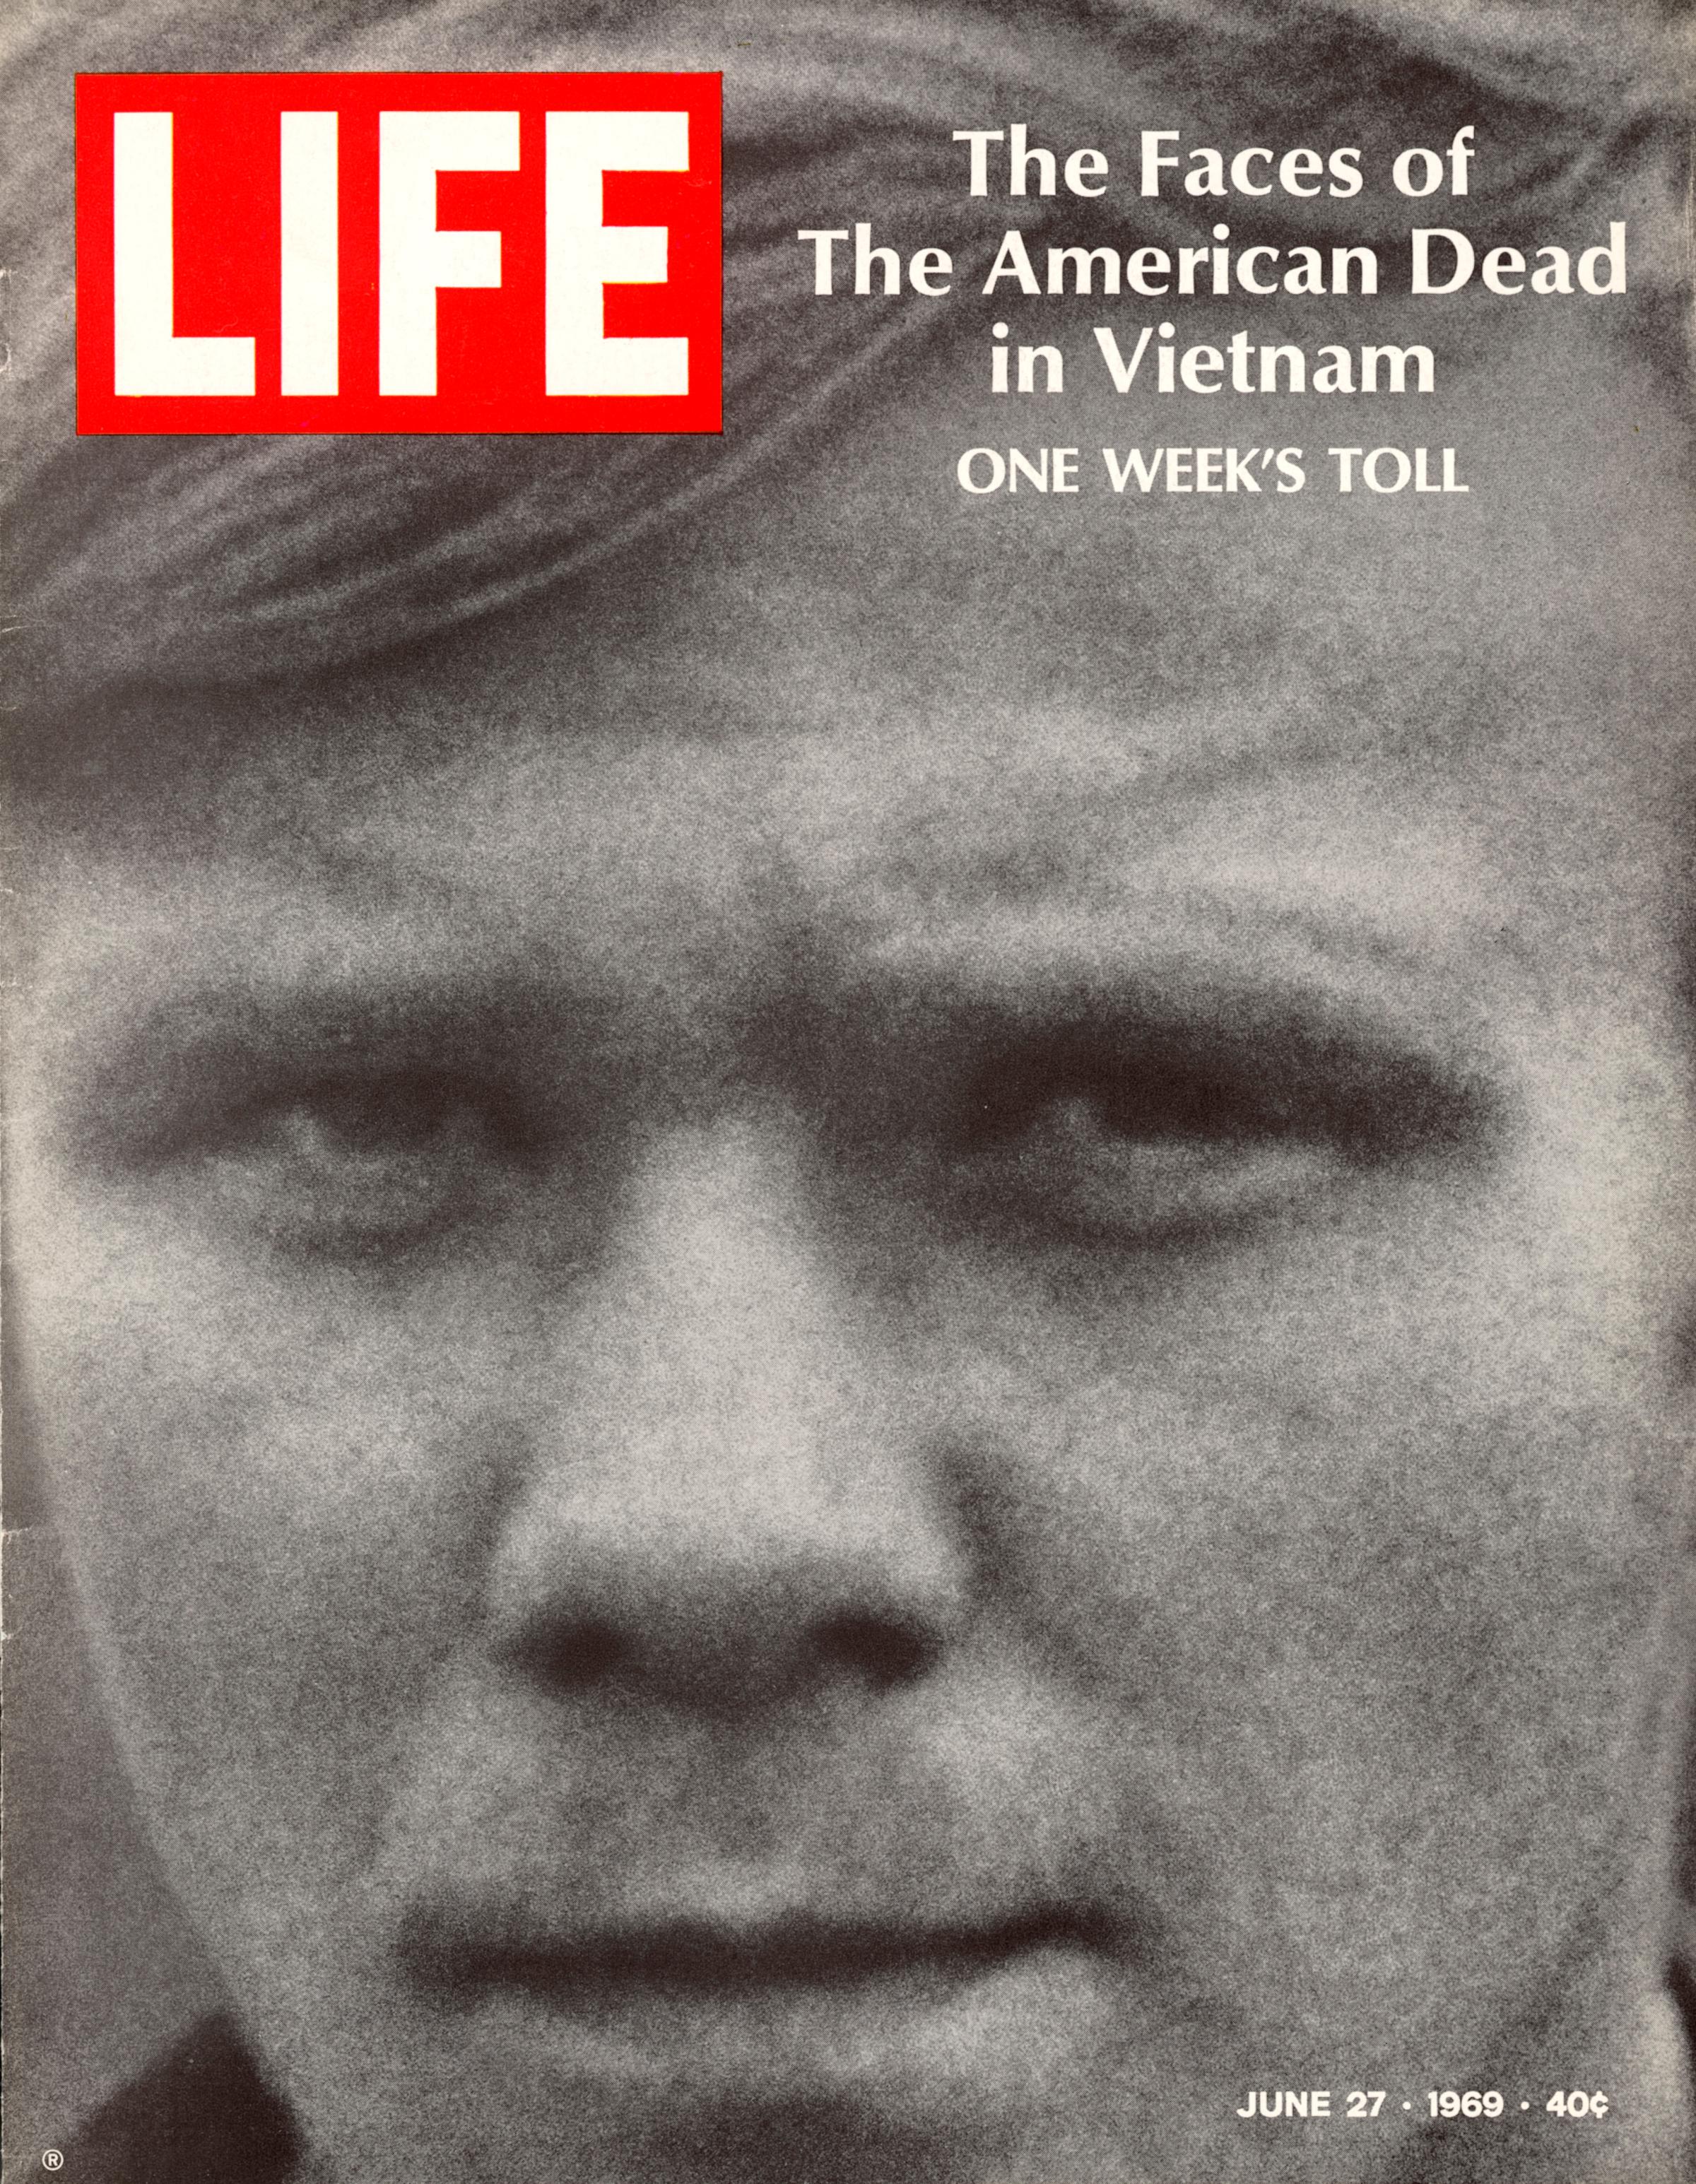 LIFE, June 27, 1969